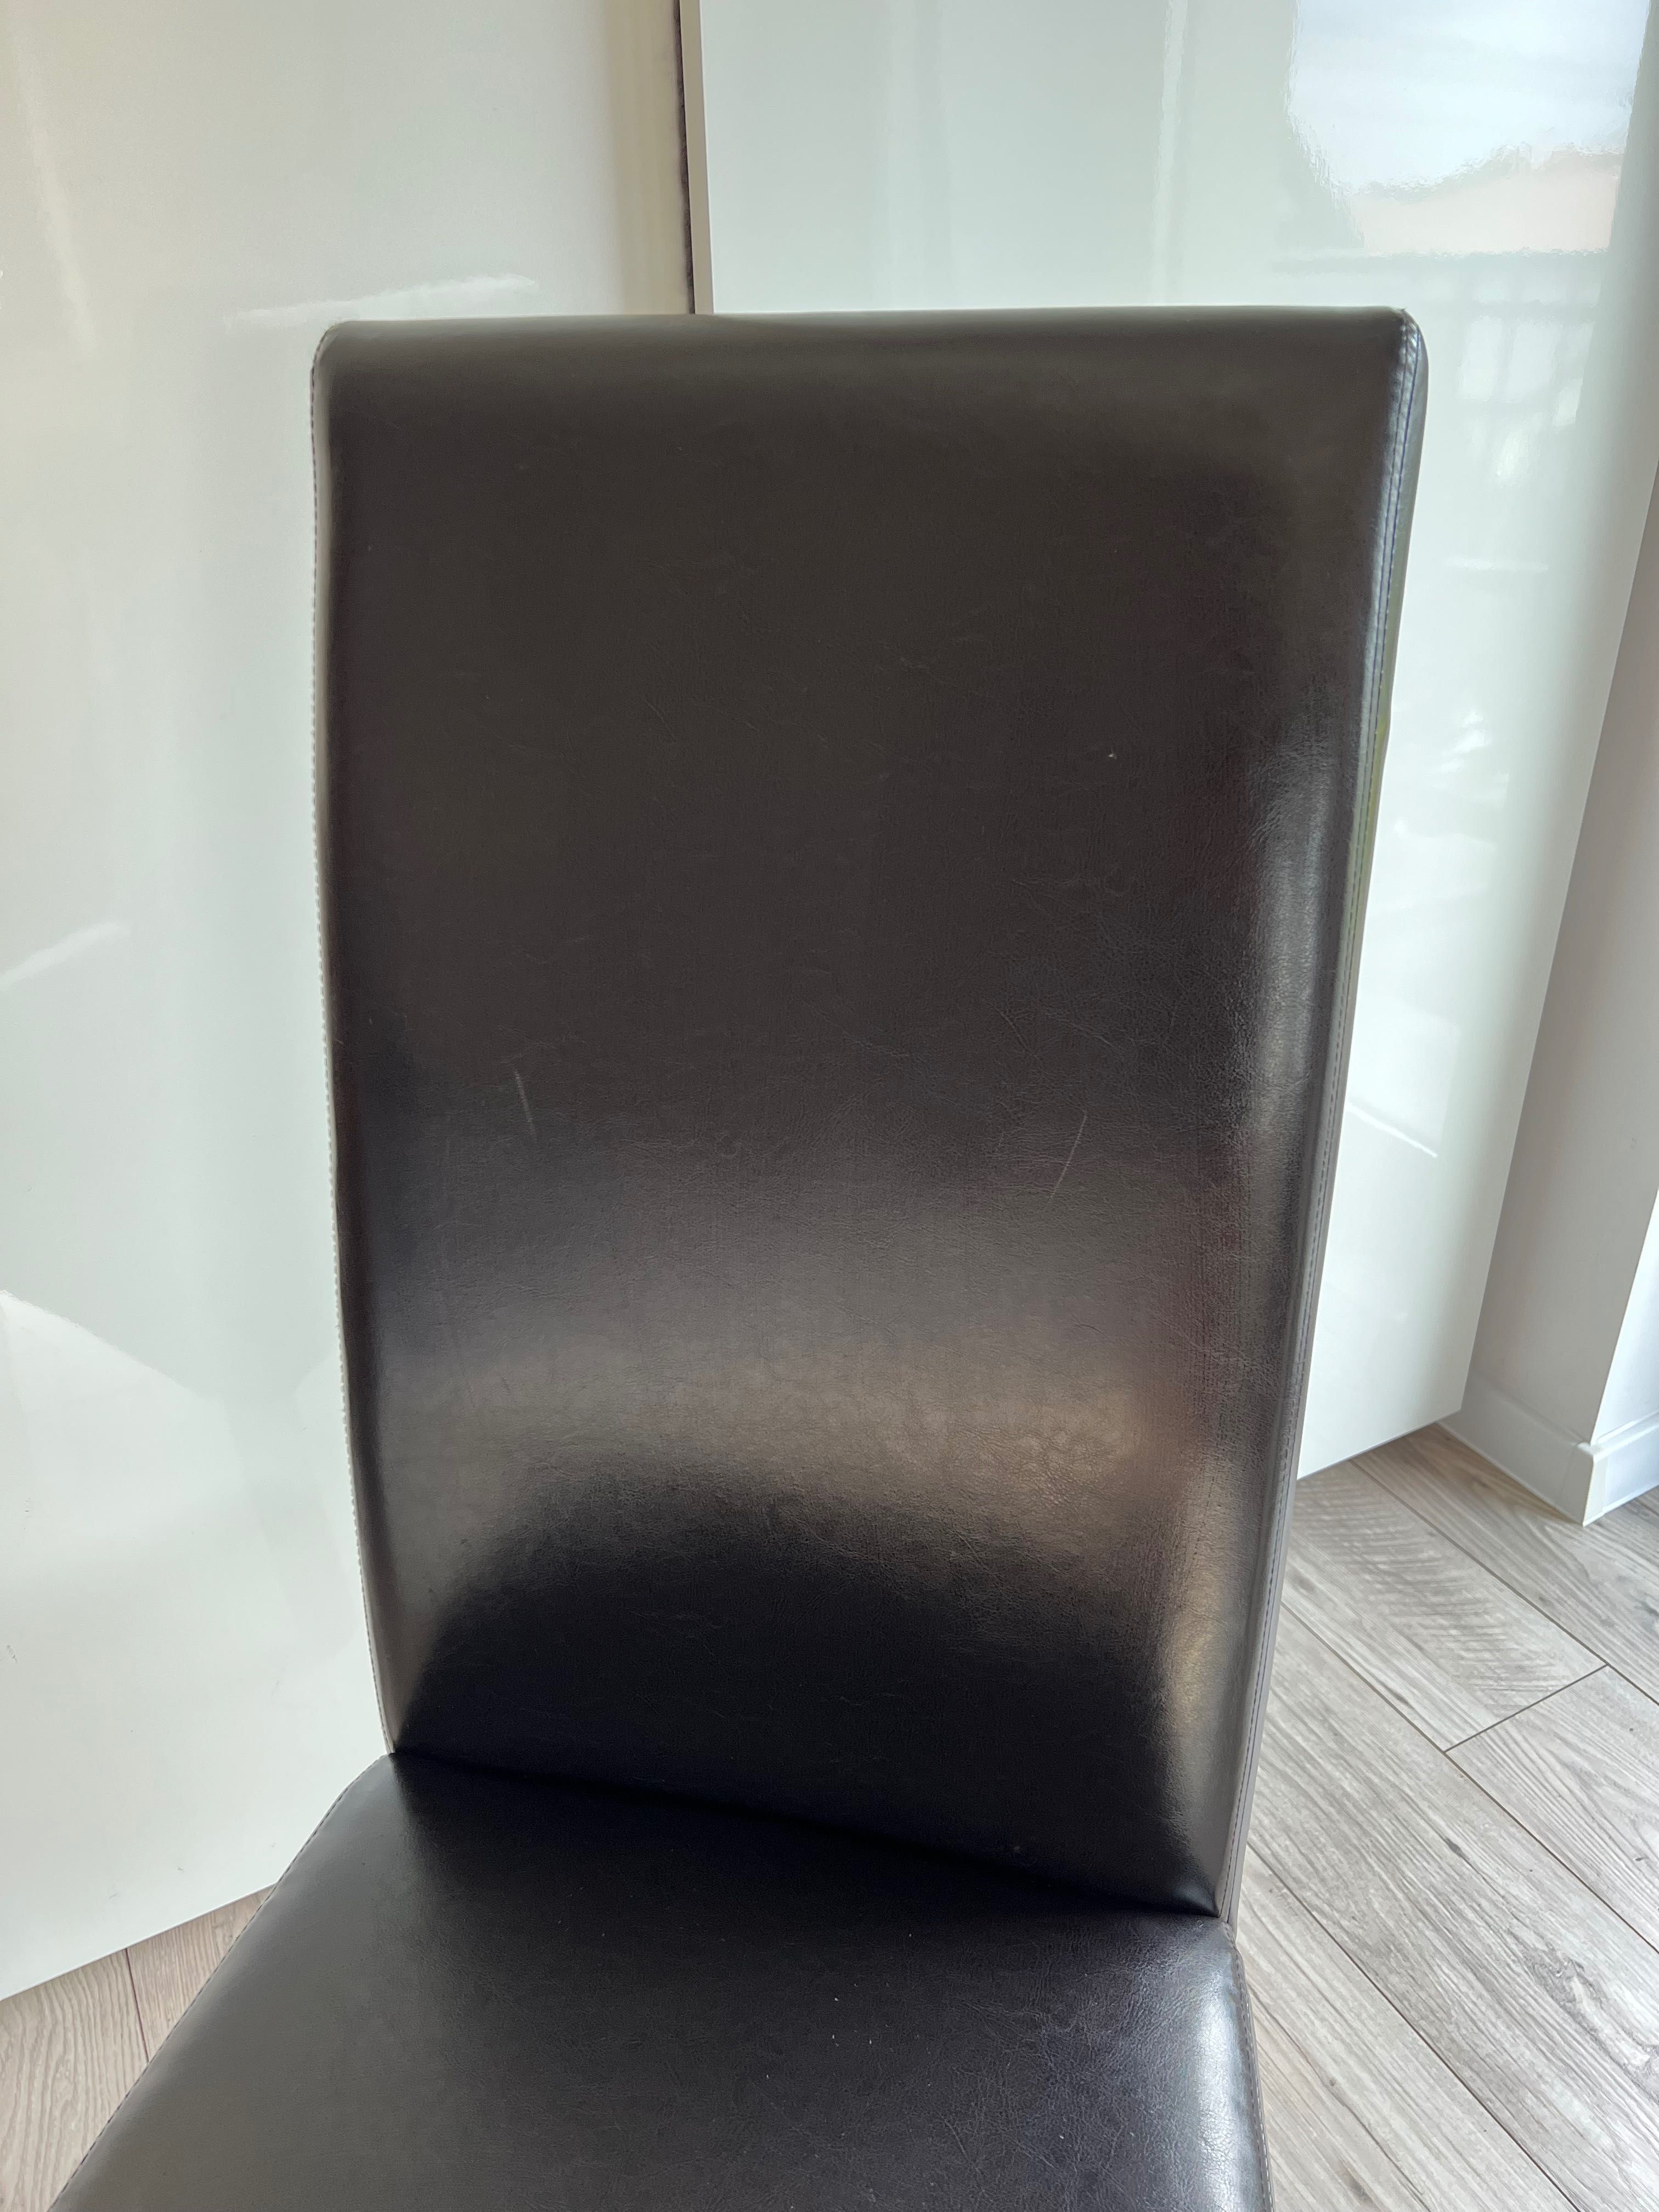 Krzesło BAKKELY brązowy Jysk drewno skóra ekologiczna lakierowane